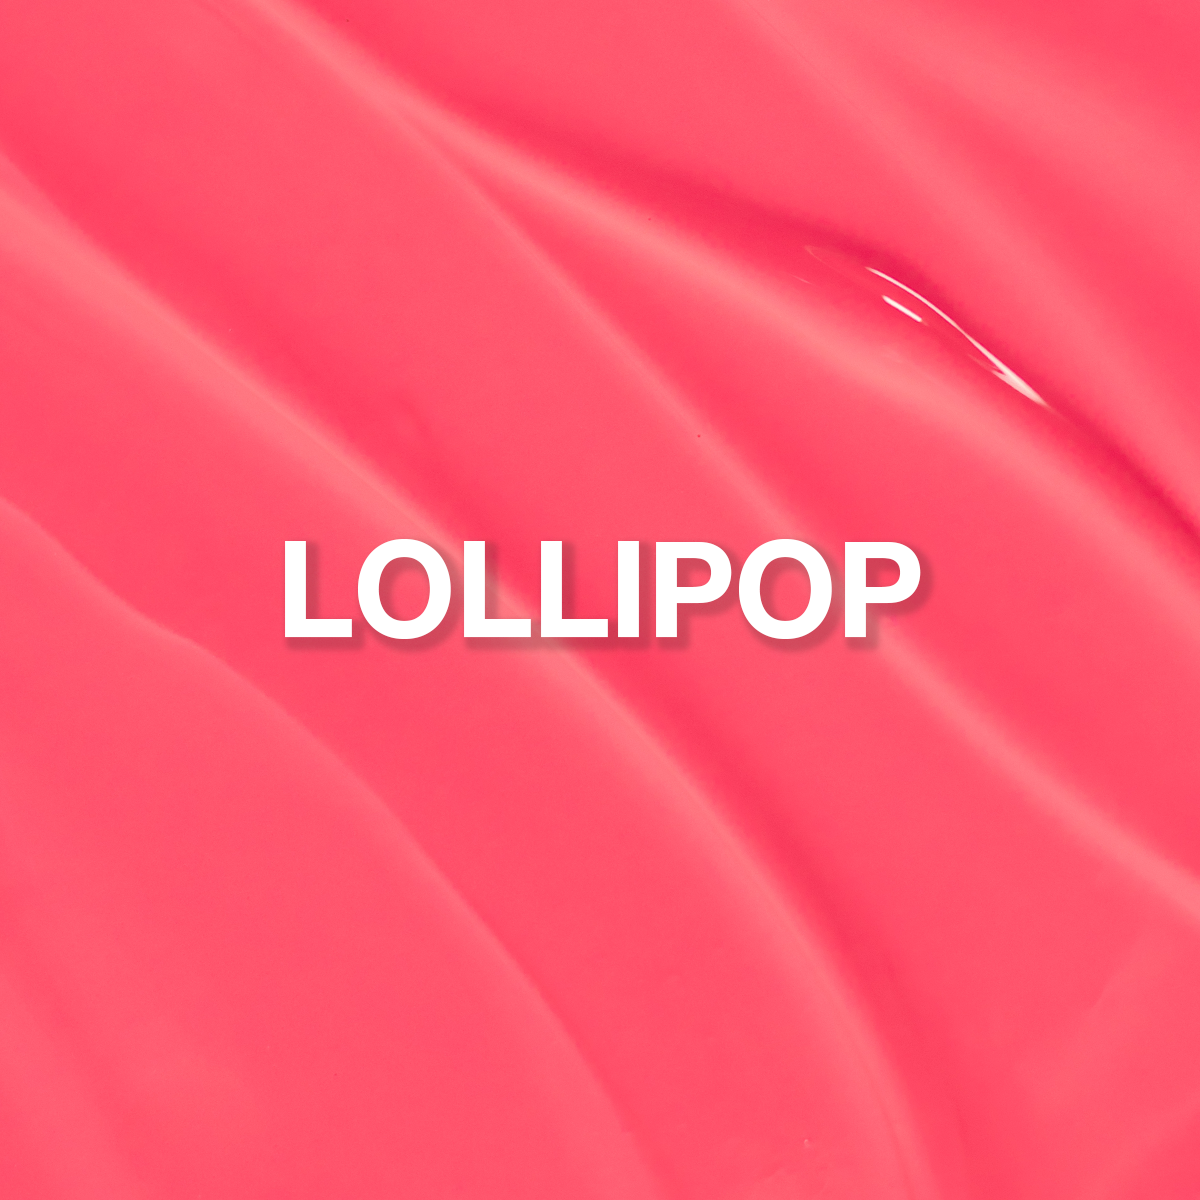 Lollipop ButterCream